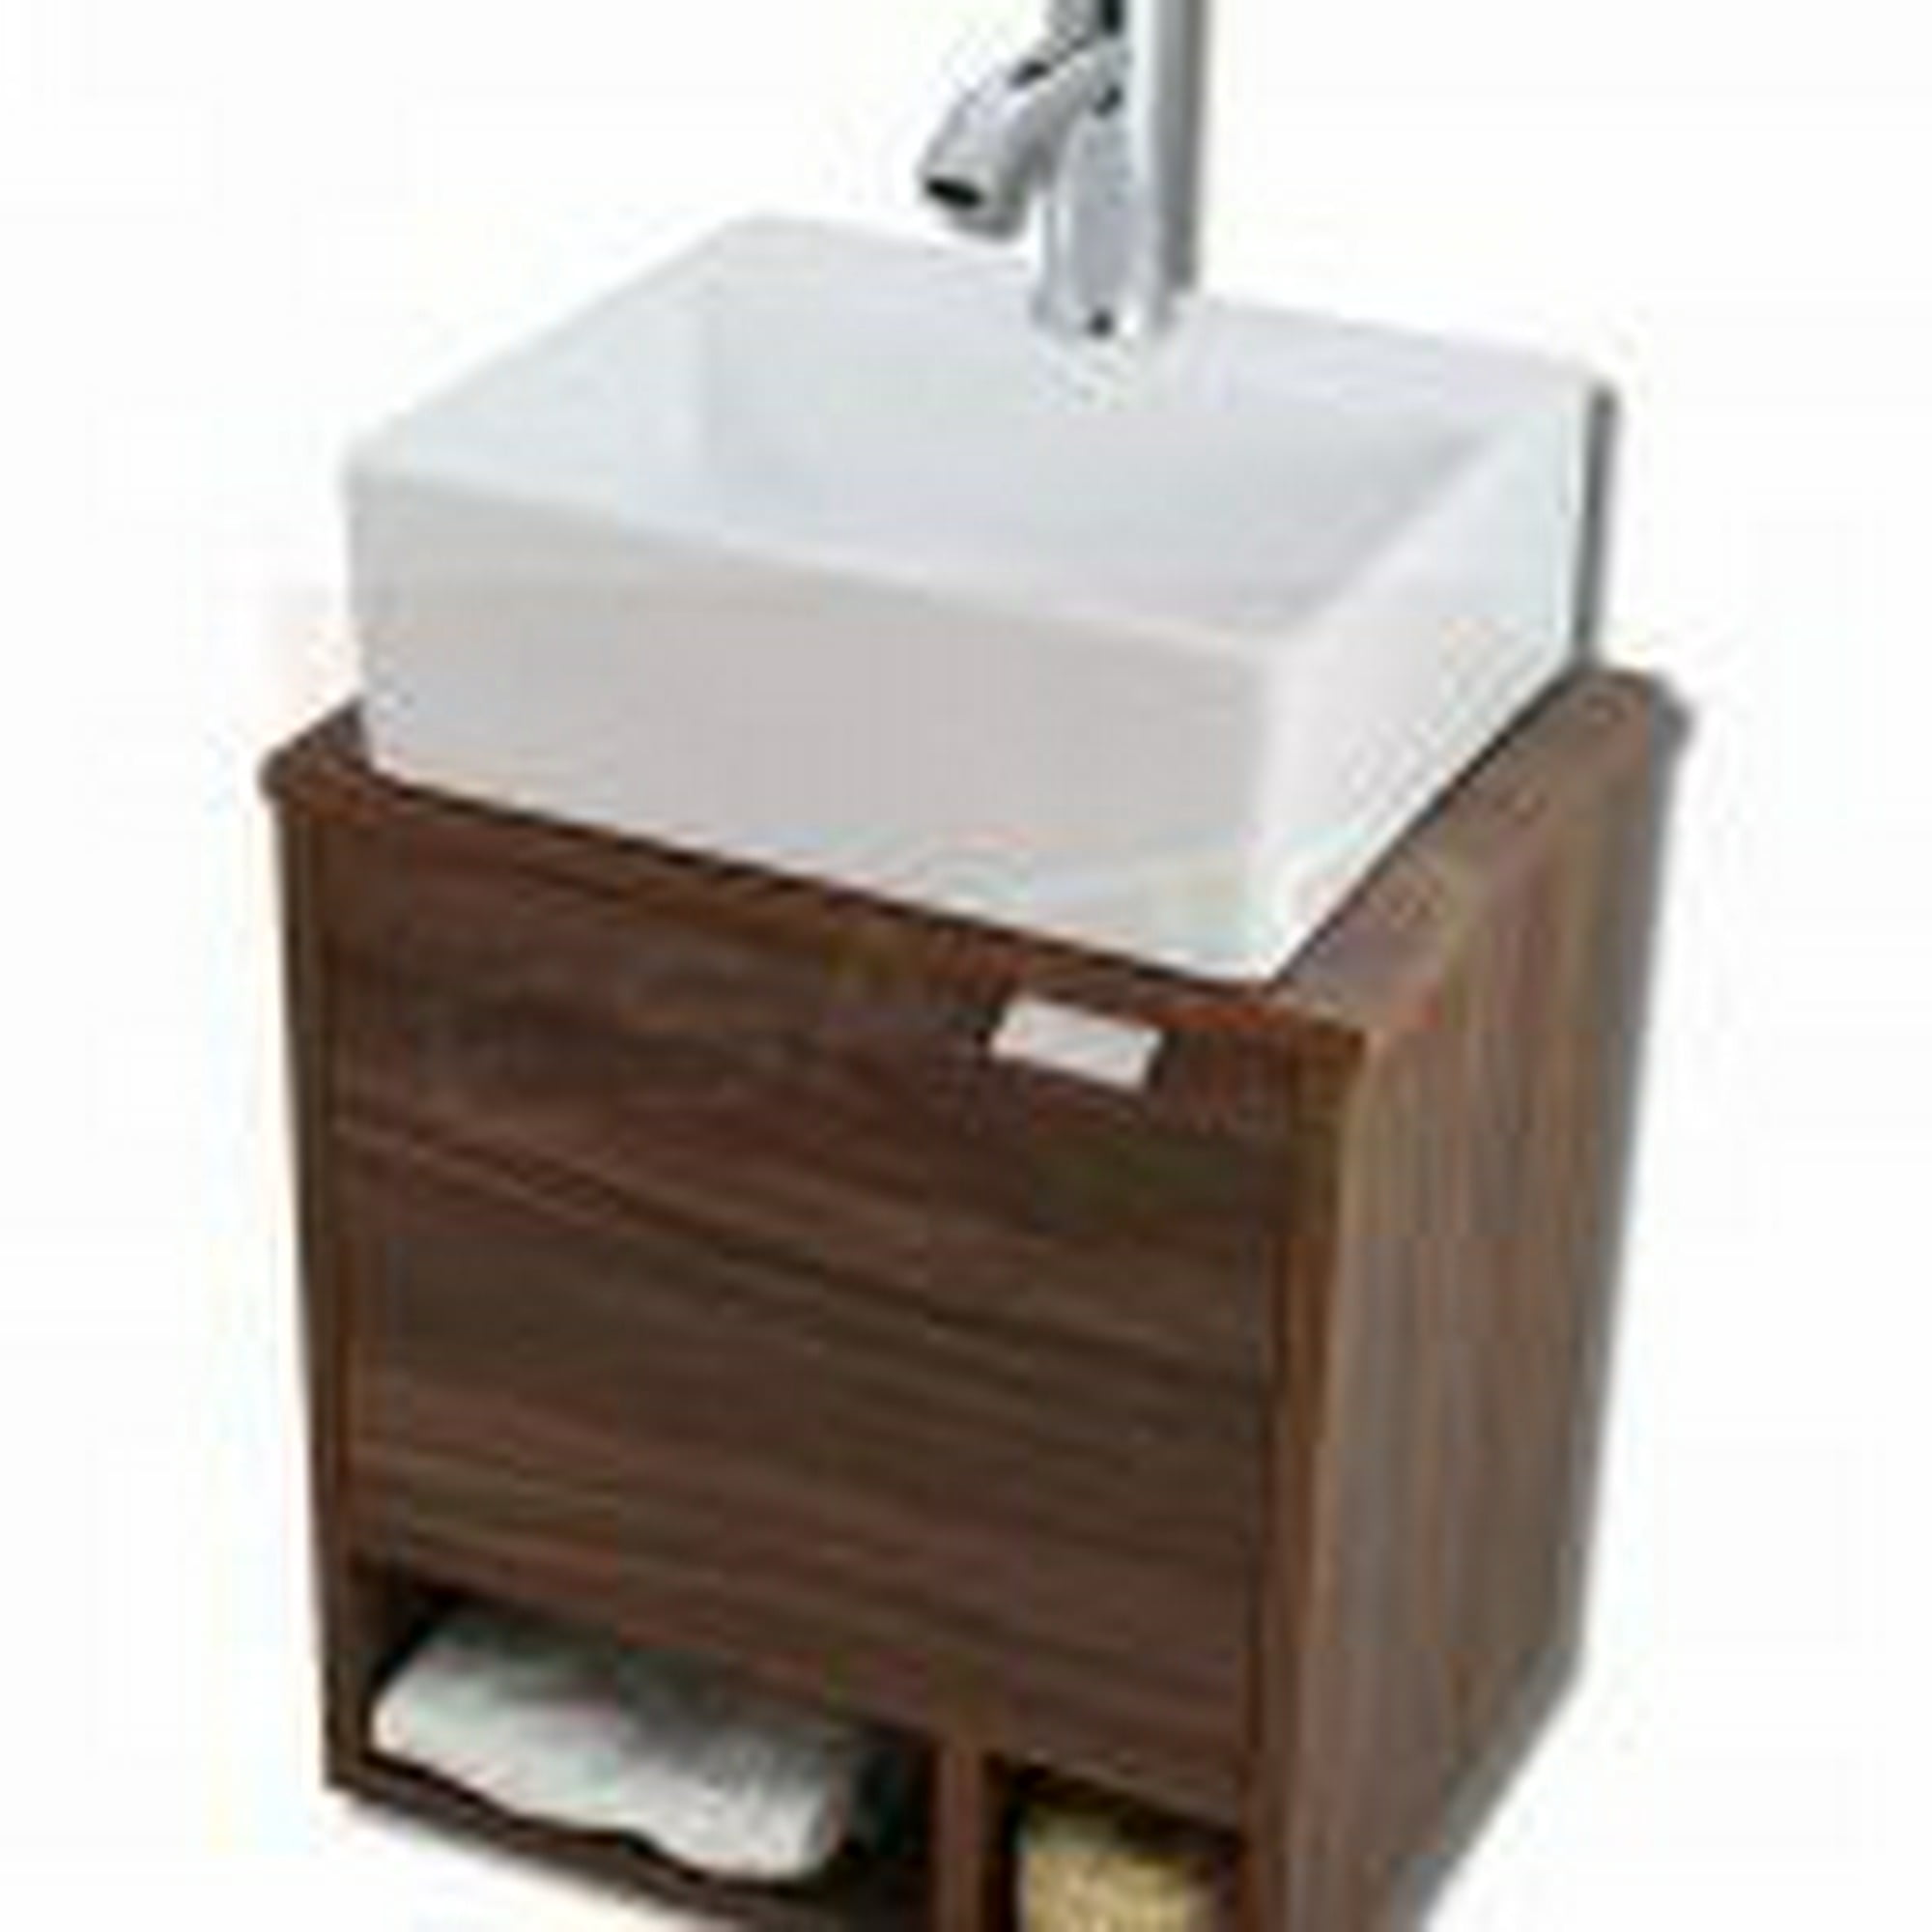 Esatto® mueble para baño dcnb luft con lavabo cerámico, llave y desagües esatto dcnb luft